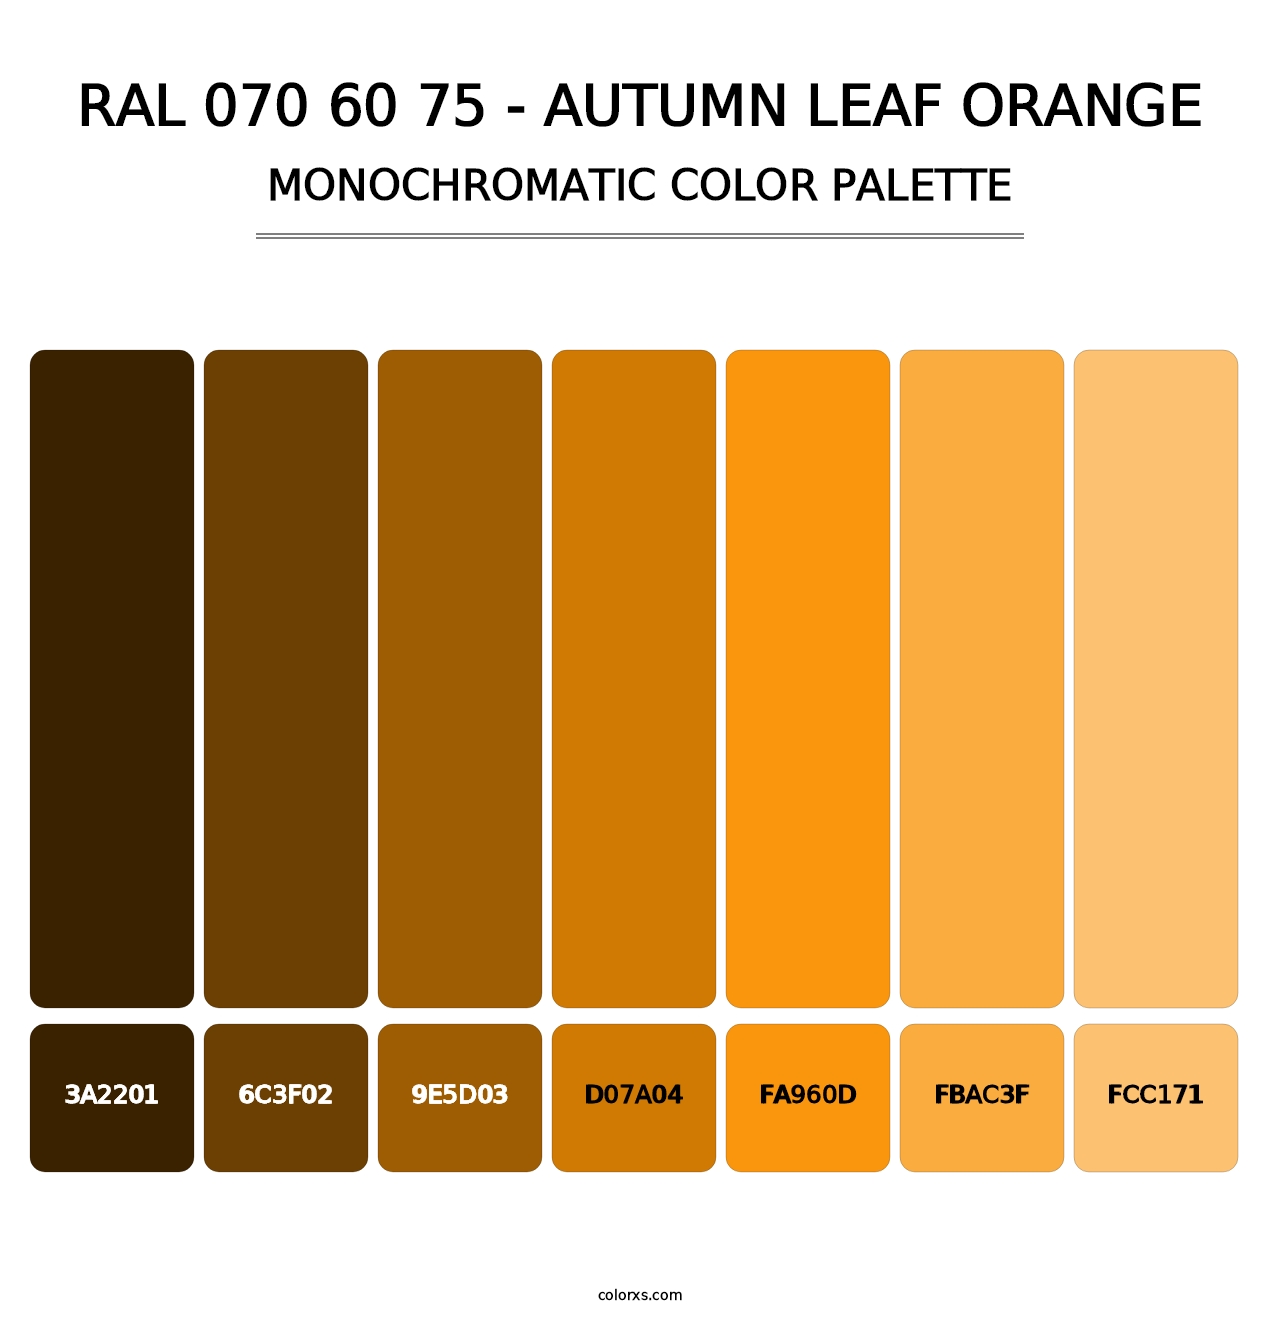 RAL 070 60 75 - Autumn Leaf Orange - Monochromatic Color Palette